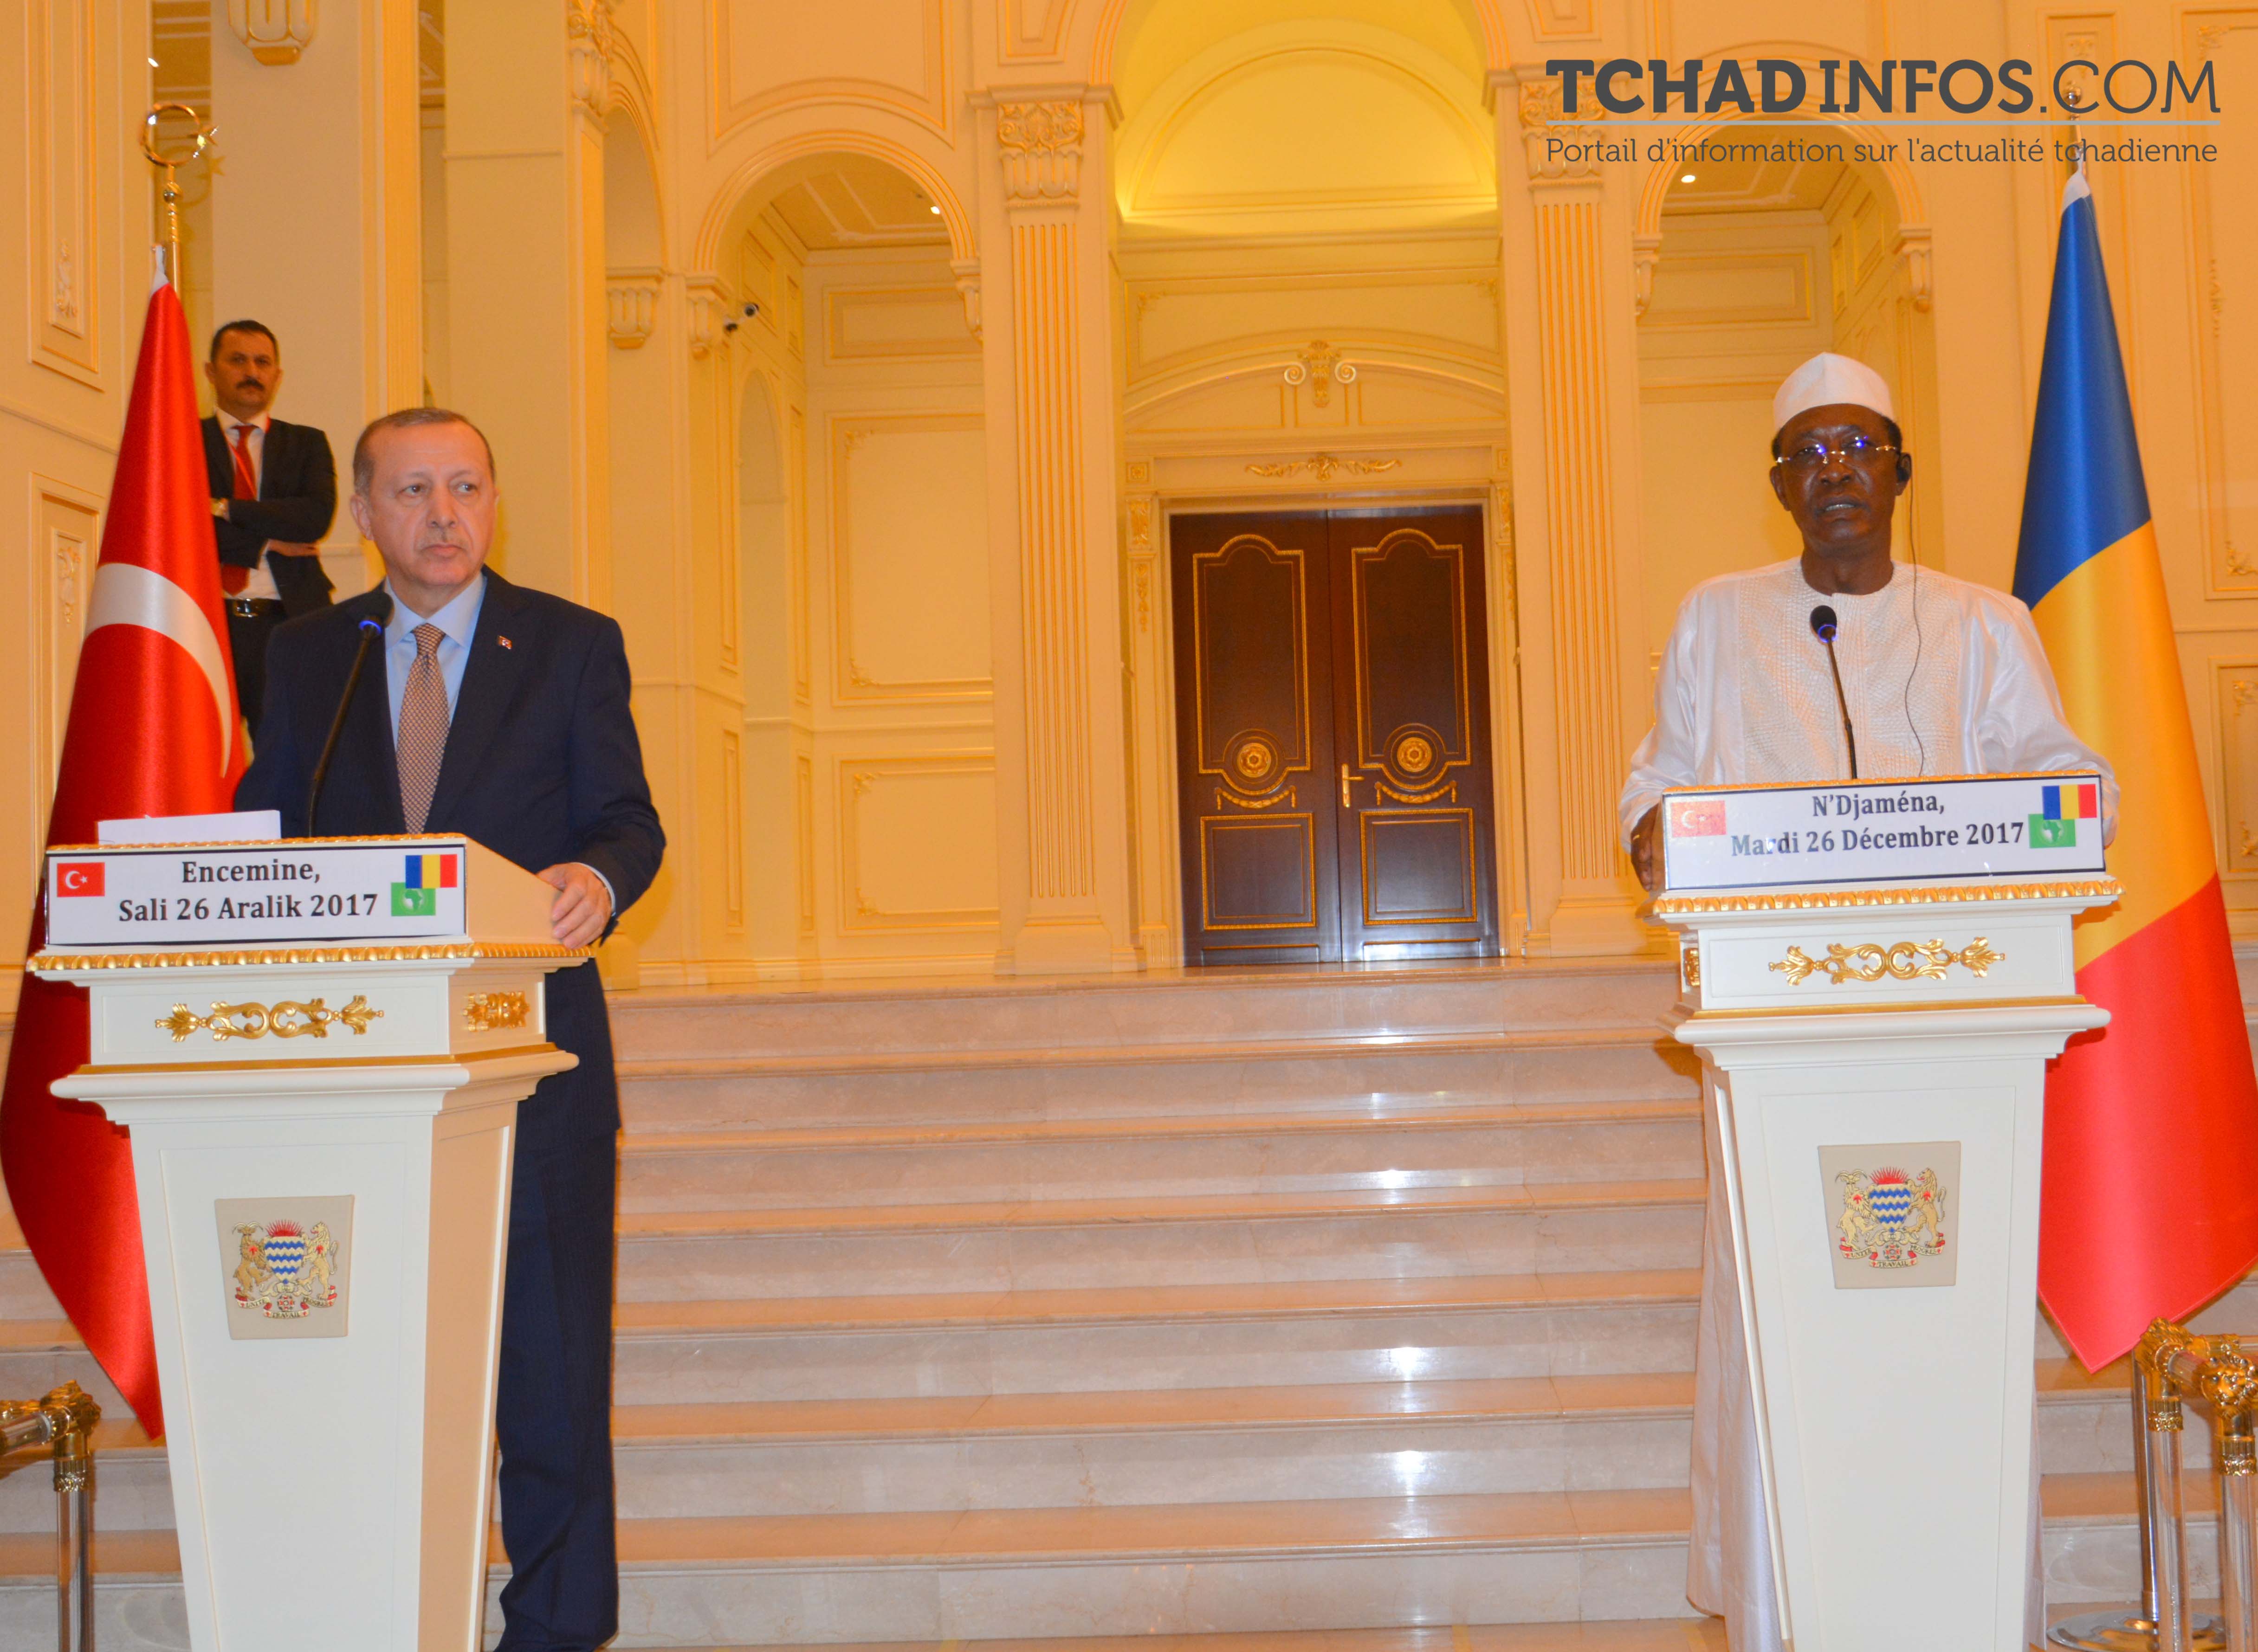 “Le Tchad est un partenaire de la Turquie depuis le 16e siècle” Recep Tayyip Erdogan